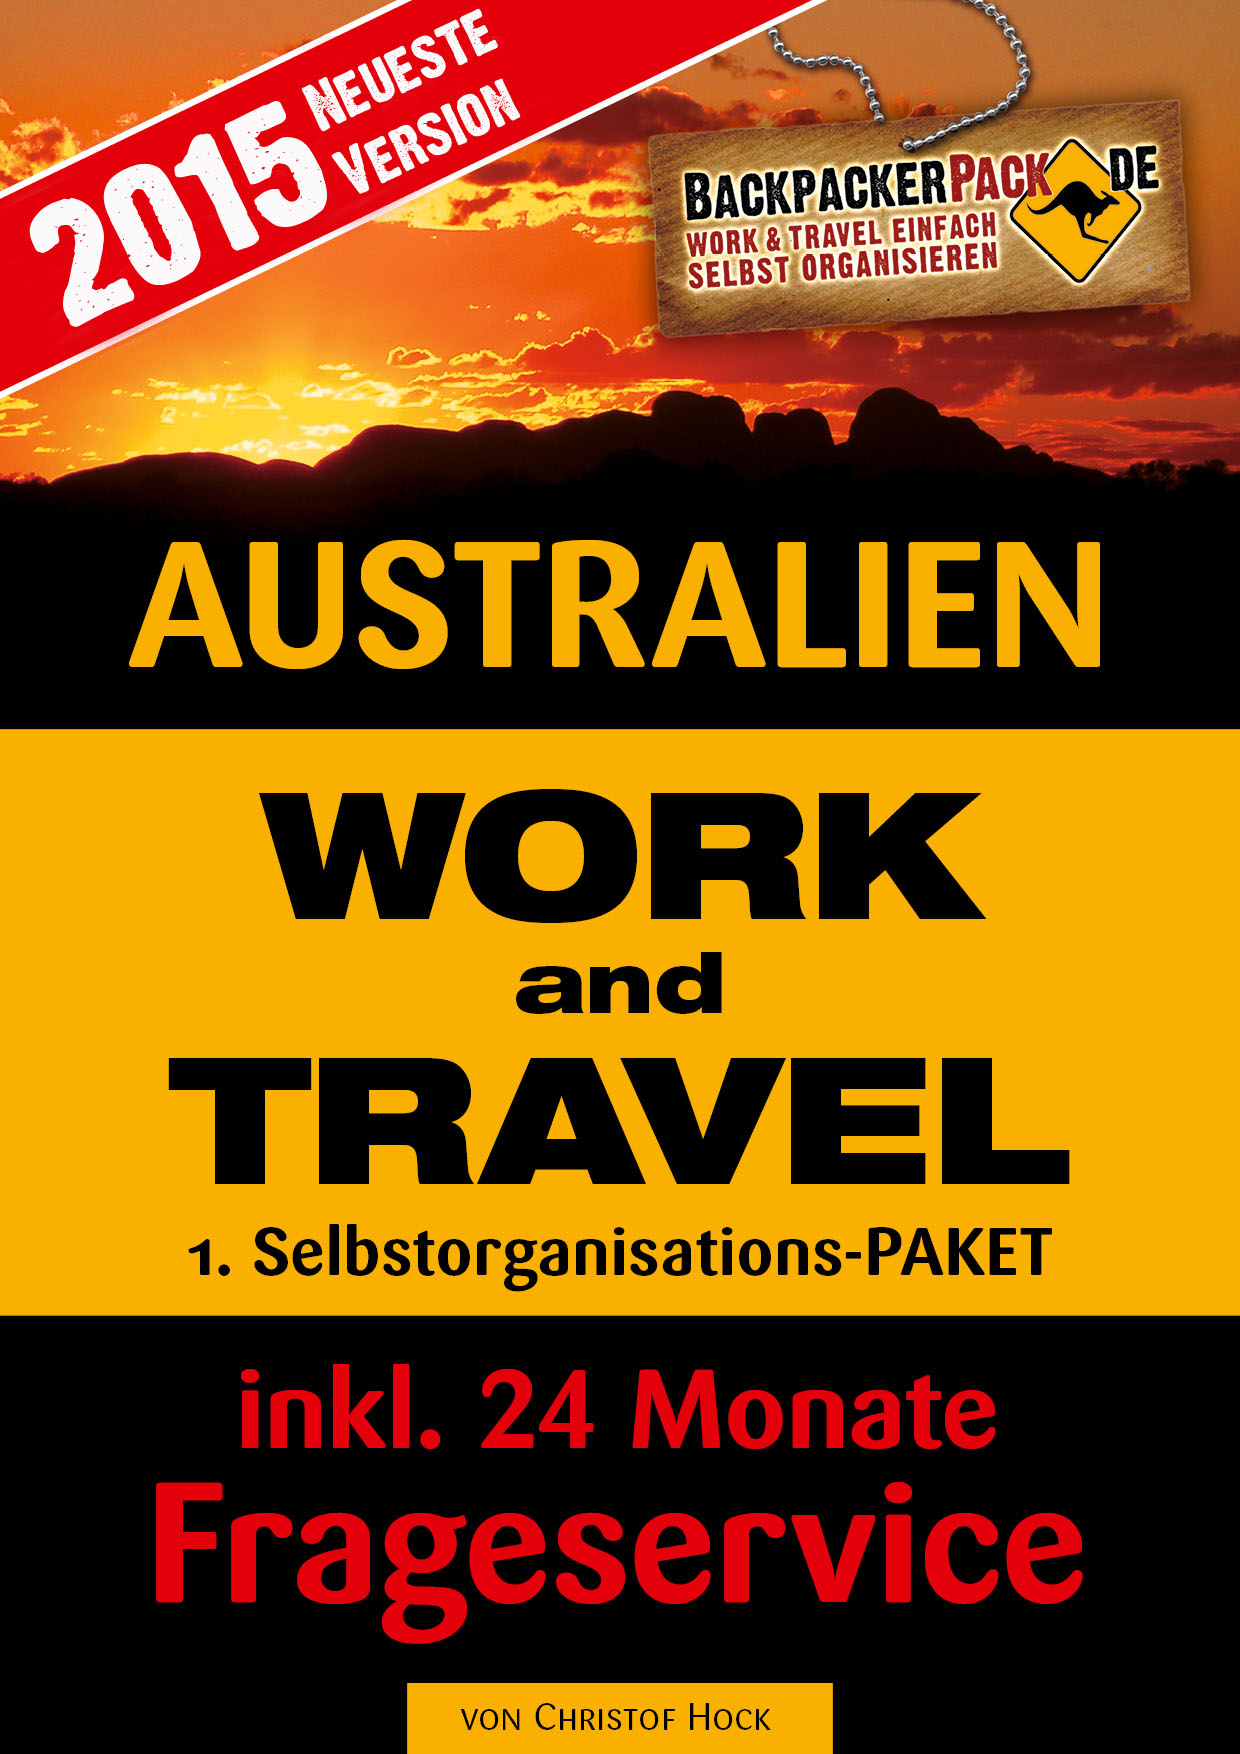 Work and Travel Australien selbst organisieren